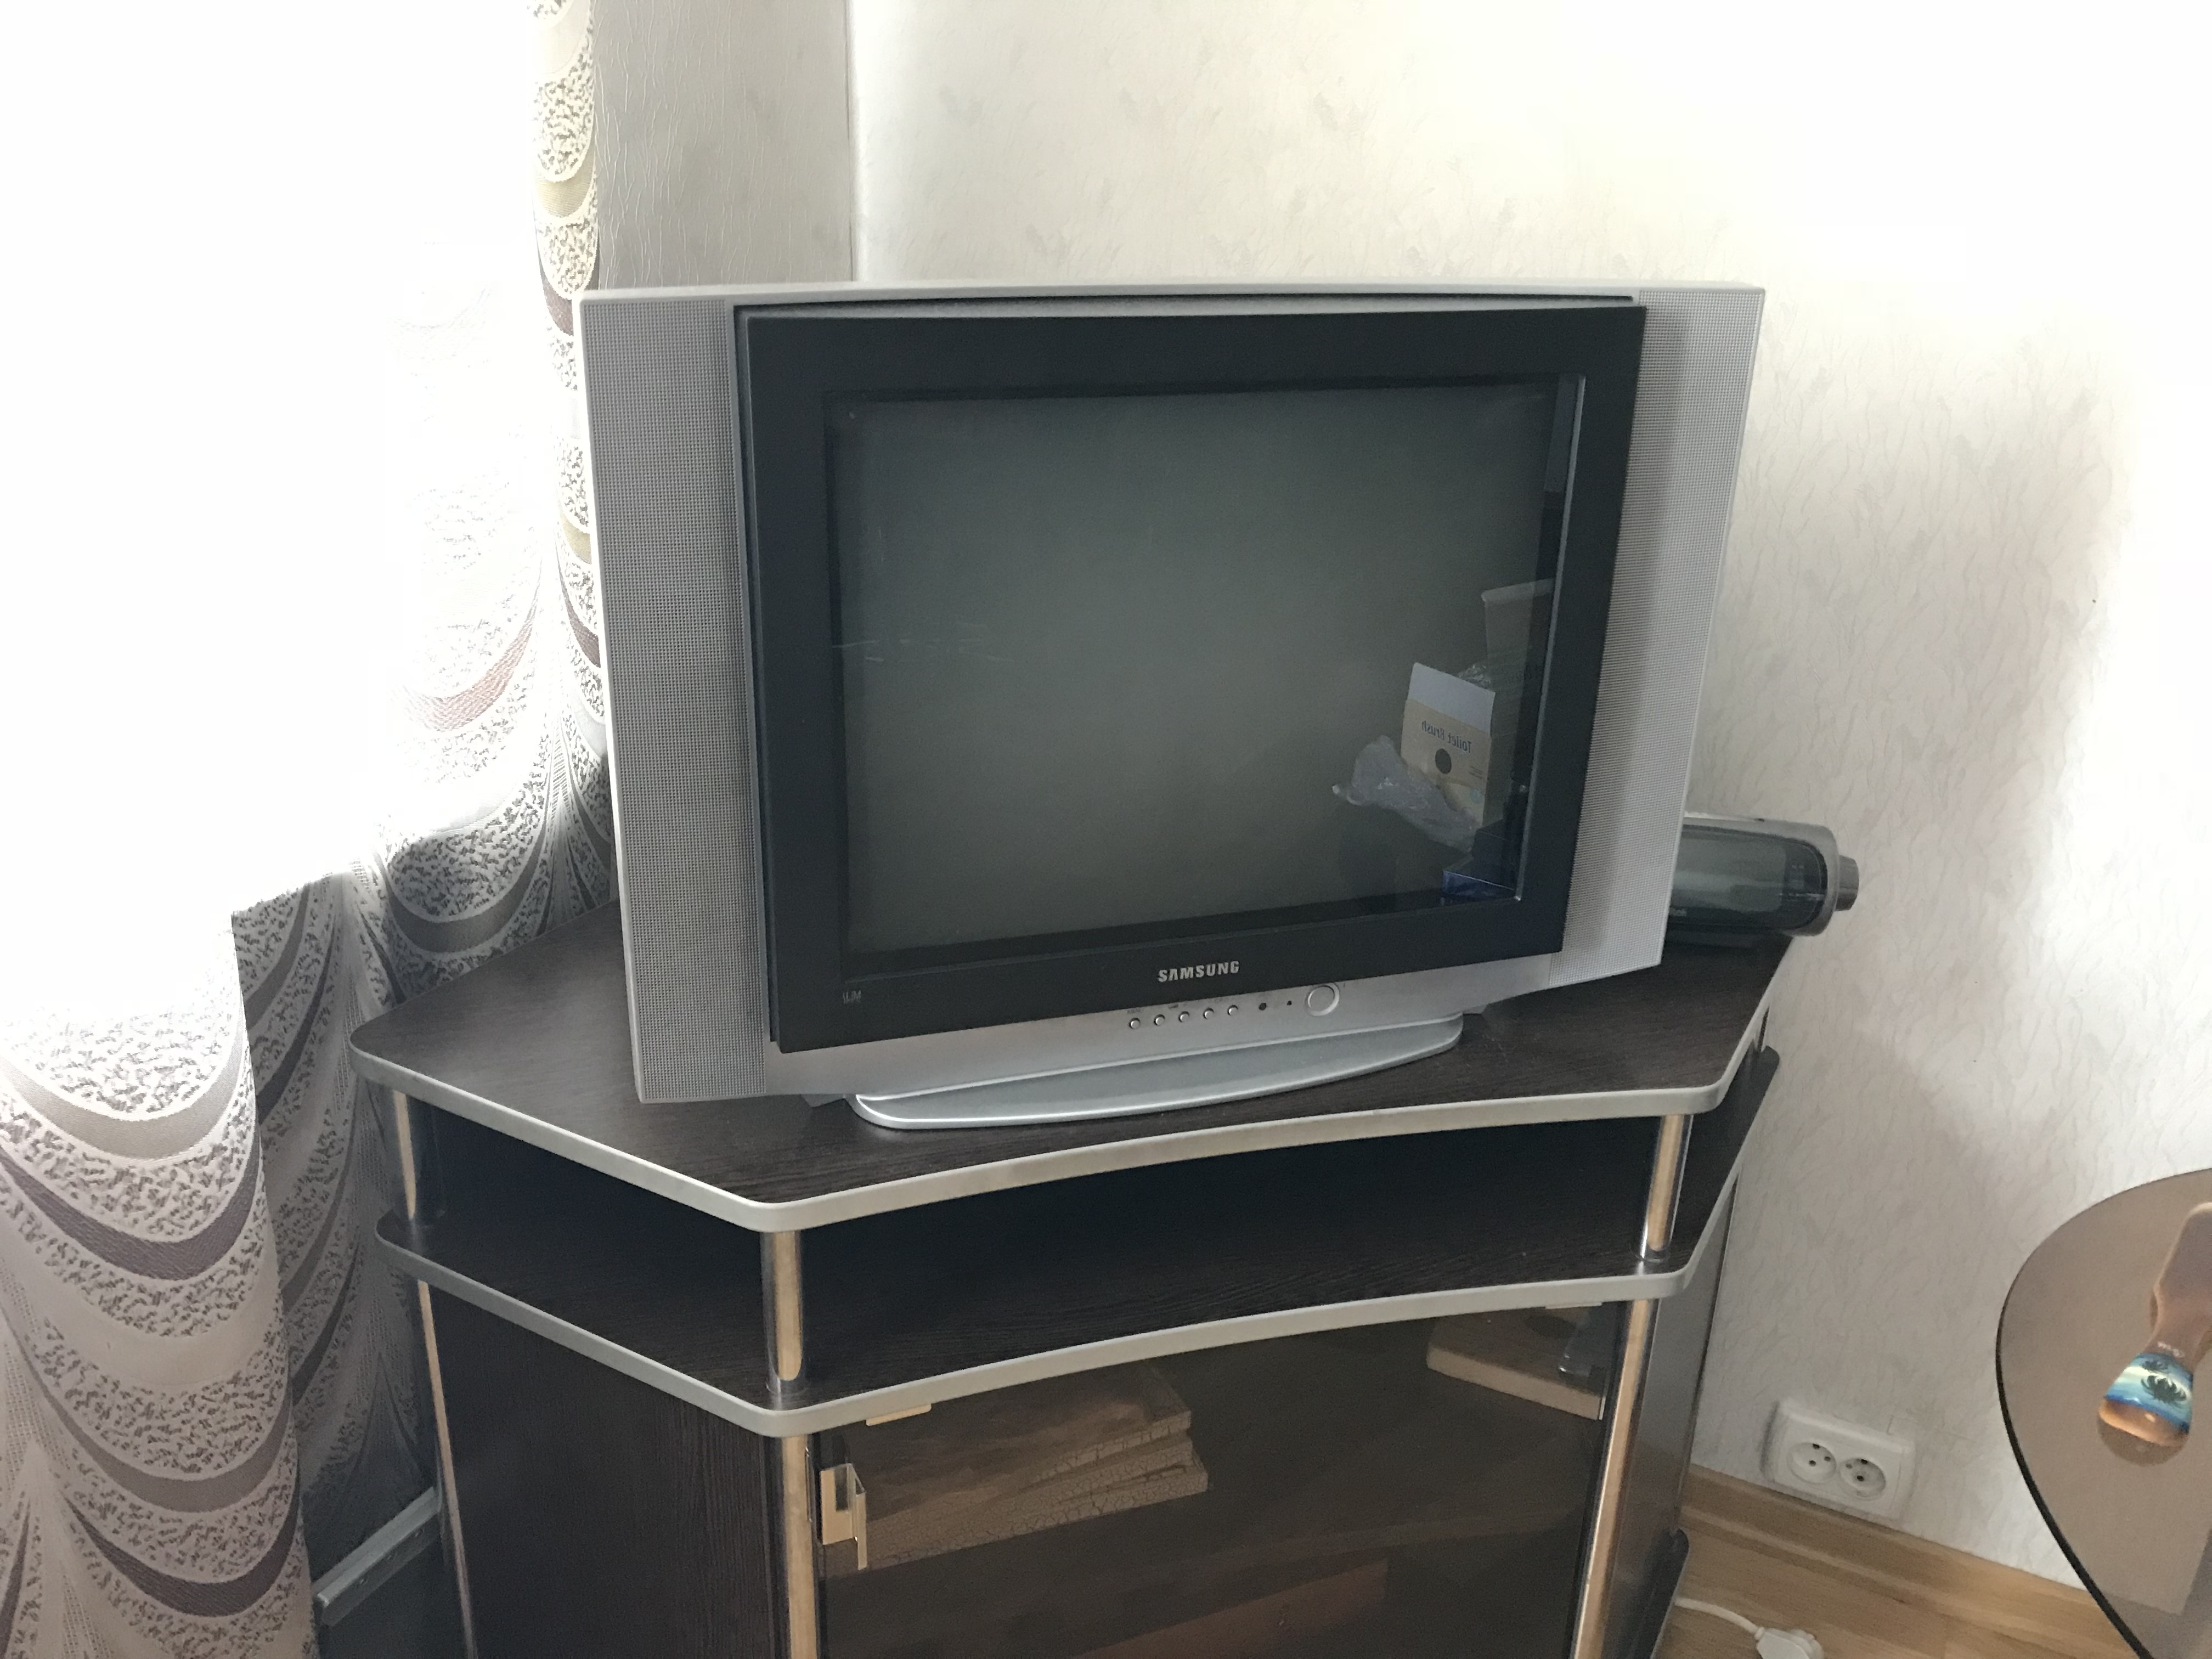 Продать телевизор спб. Телевизор даром. Отдаём старый телевизор. Отдам даром телевизор. Телевизор prima.